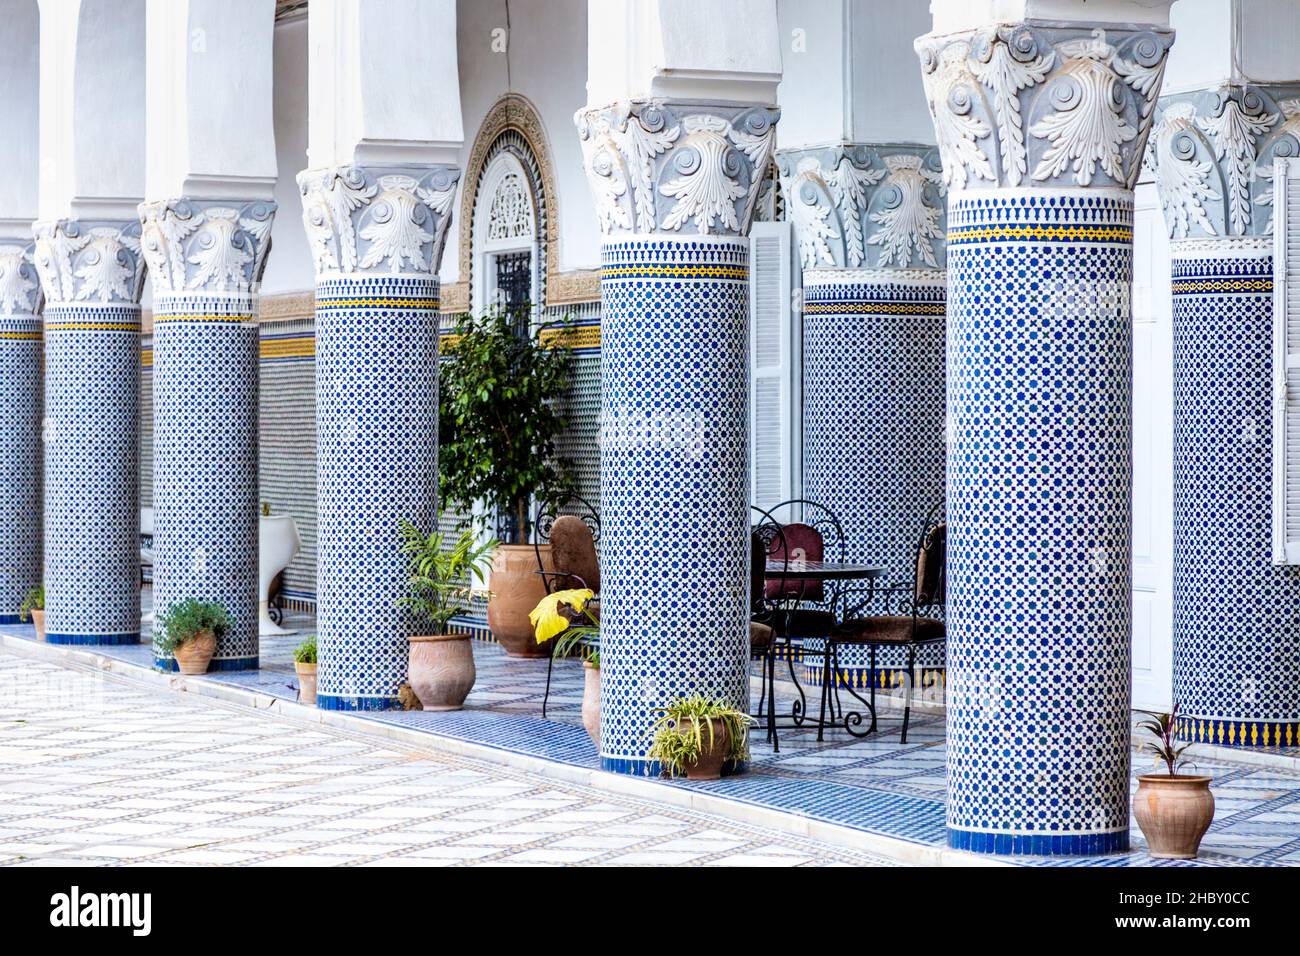 Detalle de la arquitectura oriental de un palacio marroquí, columnas y mosaicos en la pared, Palais El Mokri, Fes, Marruecos Foto de stock